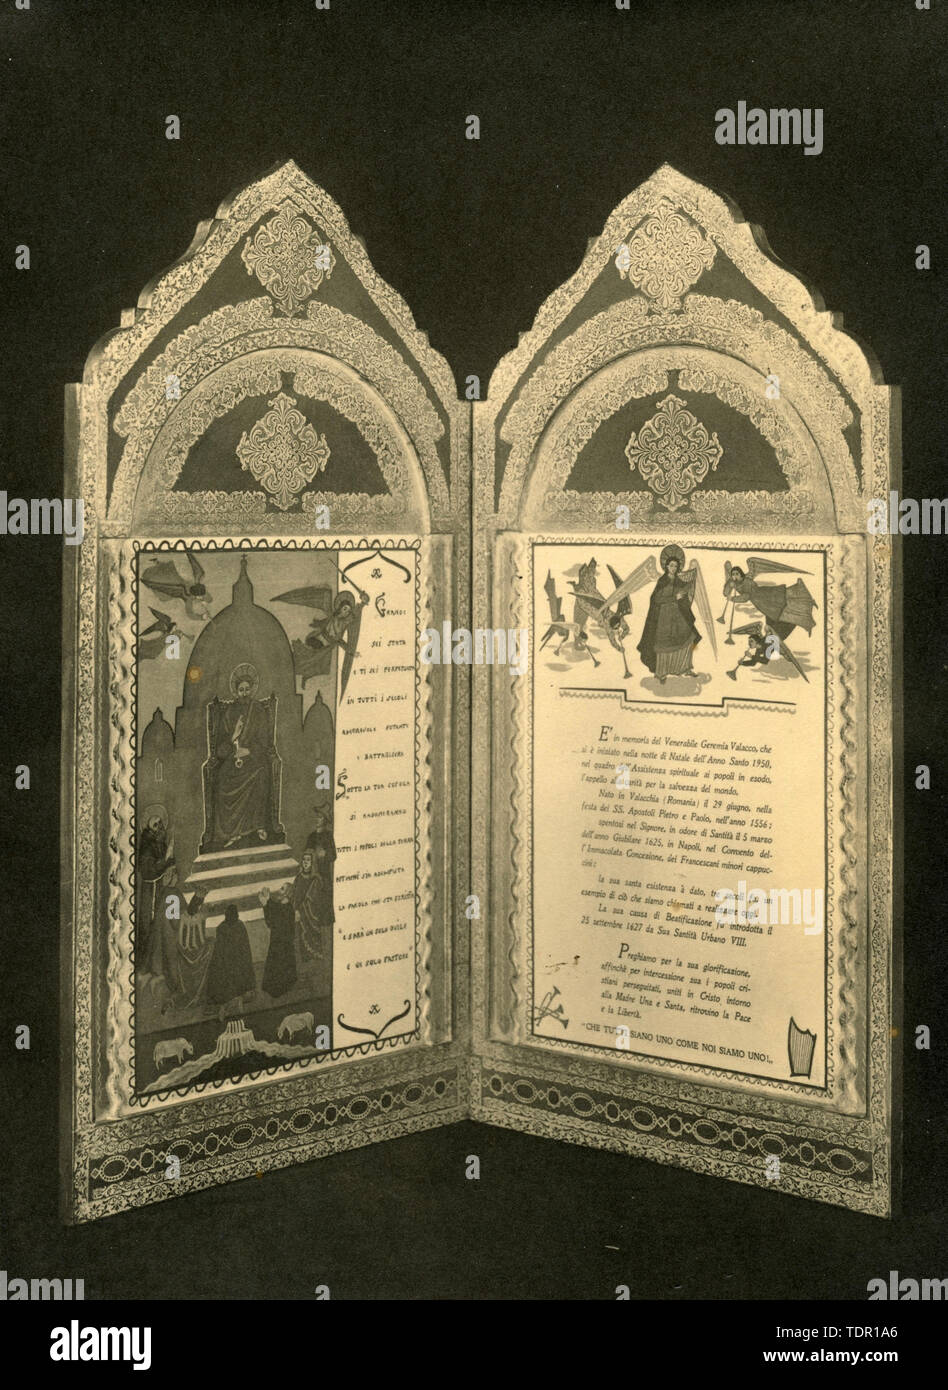 Artefactos religiosos en veneración de Jeremías de Valaquia, Italia 1930 Foto de stock